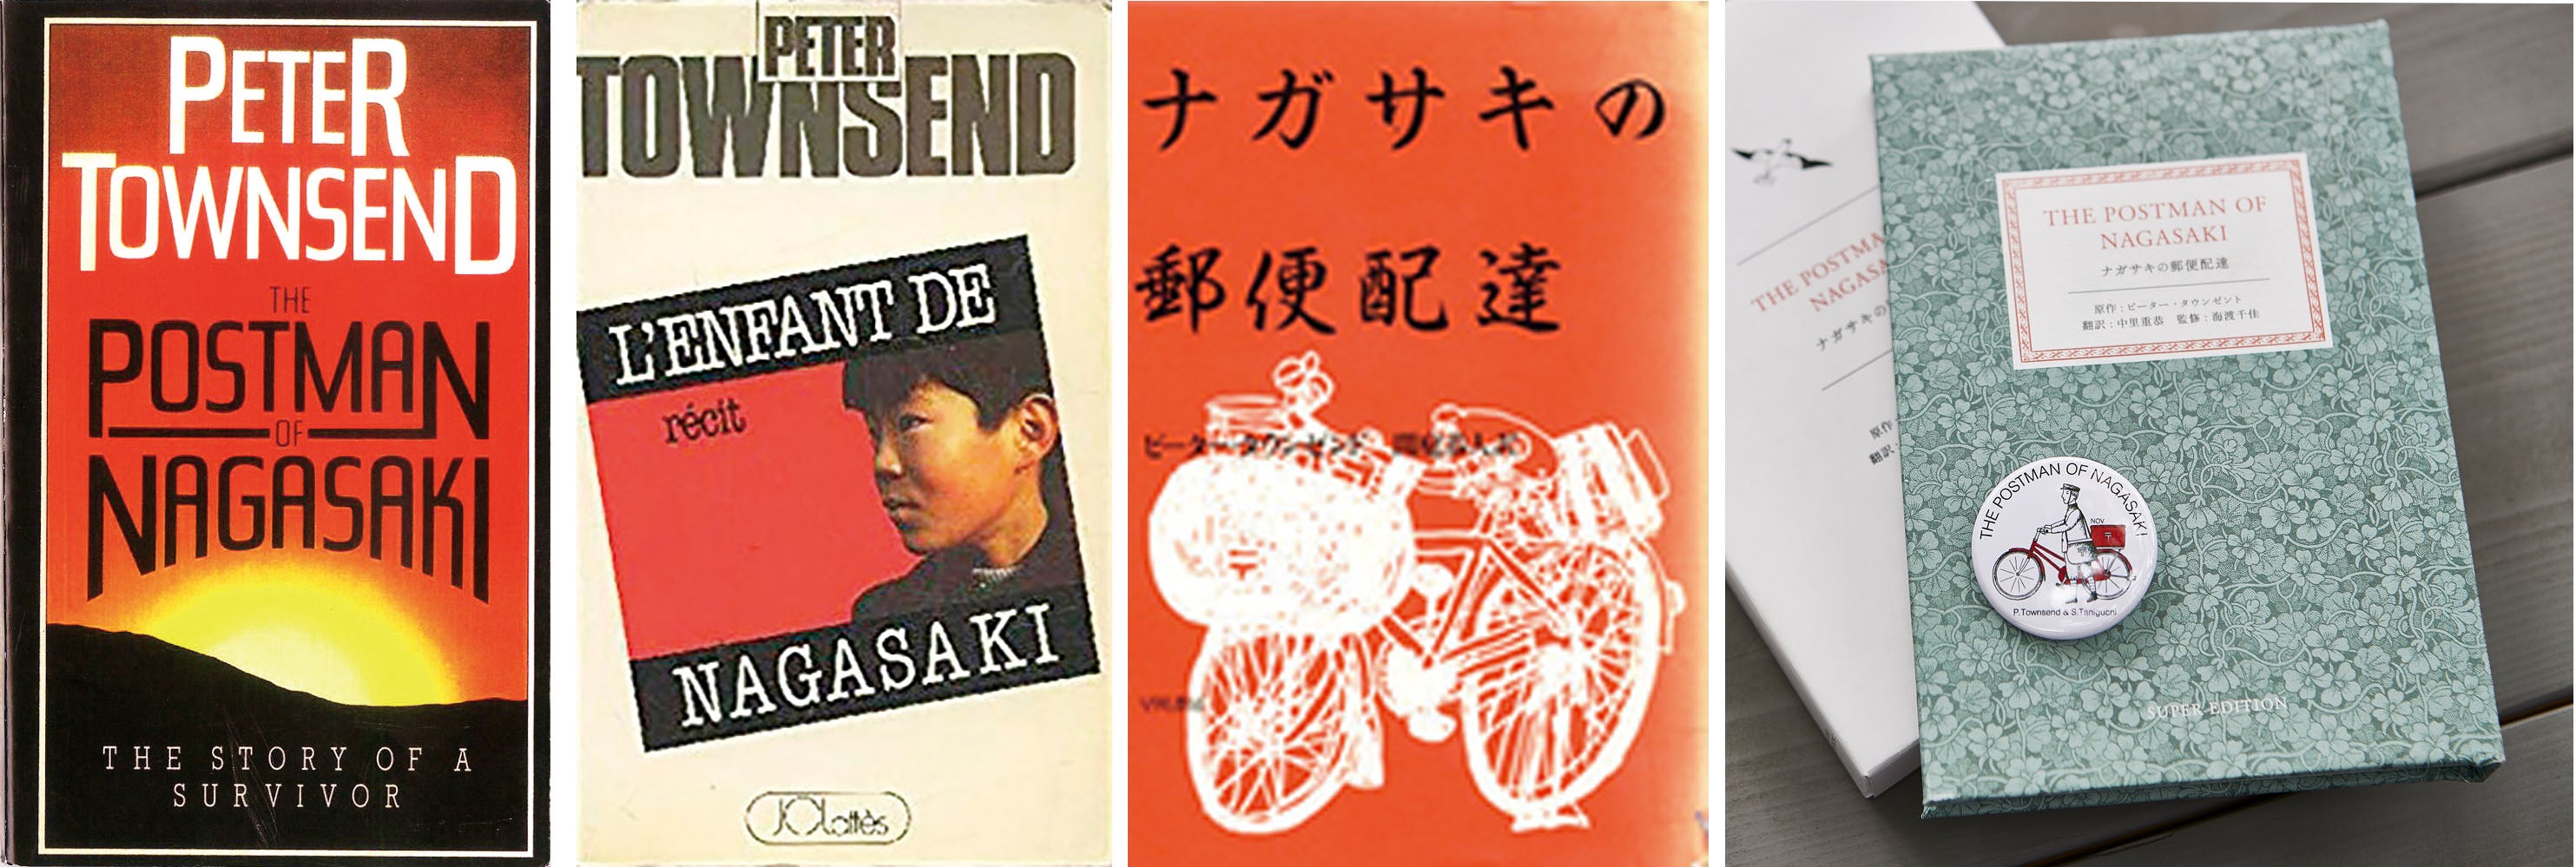 原爆の悲劇を描いた「ナガサキの郵便配達」を核保有5ヶ国の言語で出版